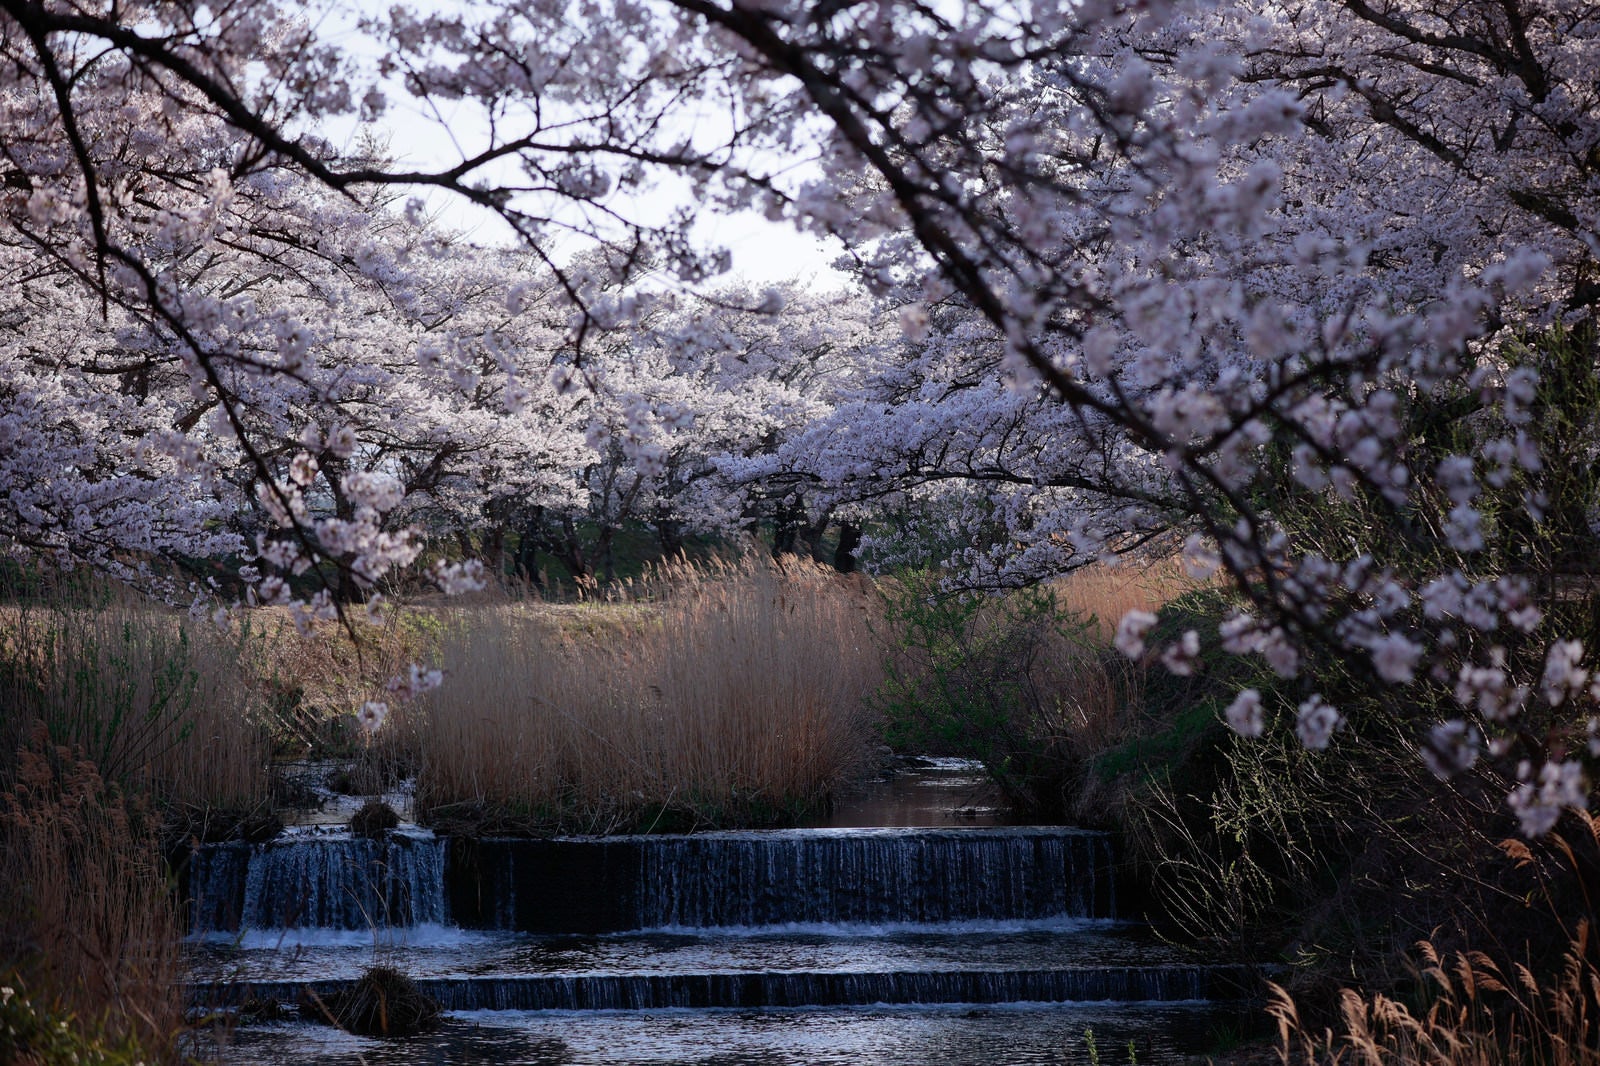 「流れ落ちる川の水と笹原川の千本桜」の写真